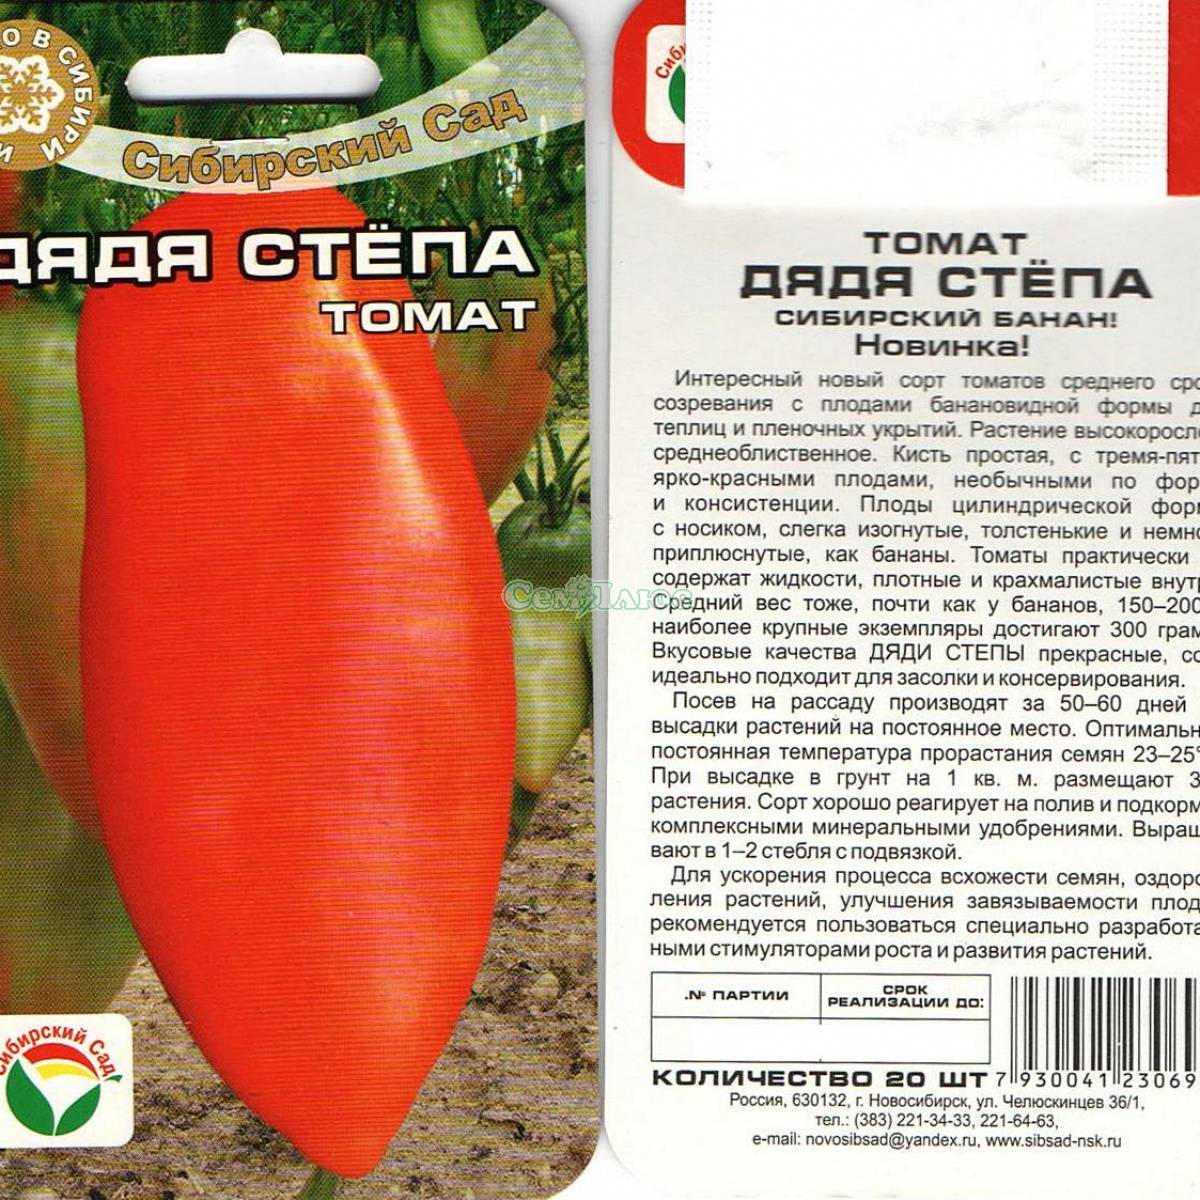 Описание селекционного томата Дядя Степа и агротехника выращивания сорта